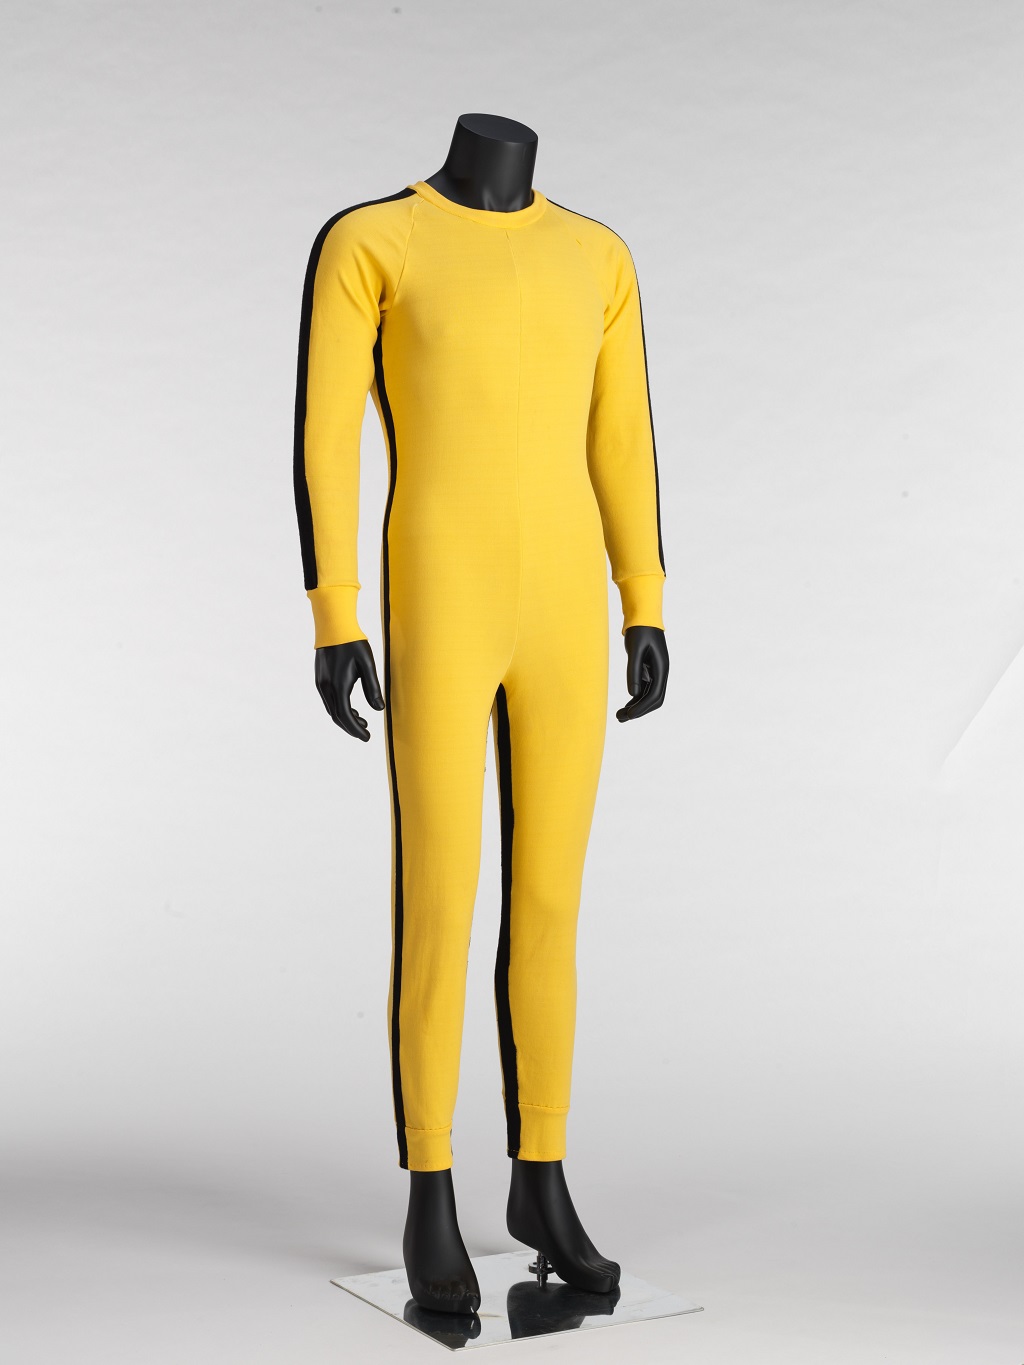 李小龍於電影《死亡遊戲》中穿著的經典黃色戰衣